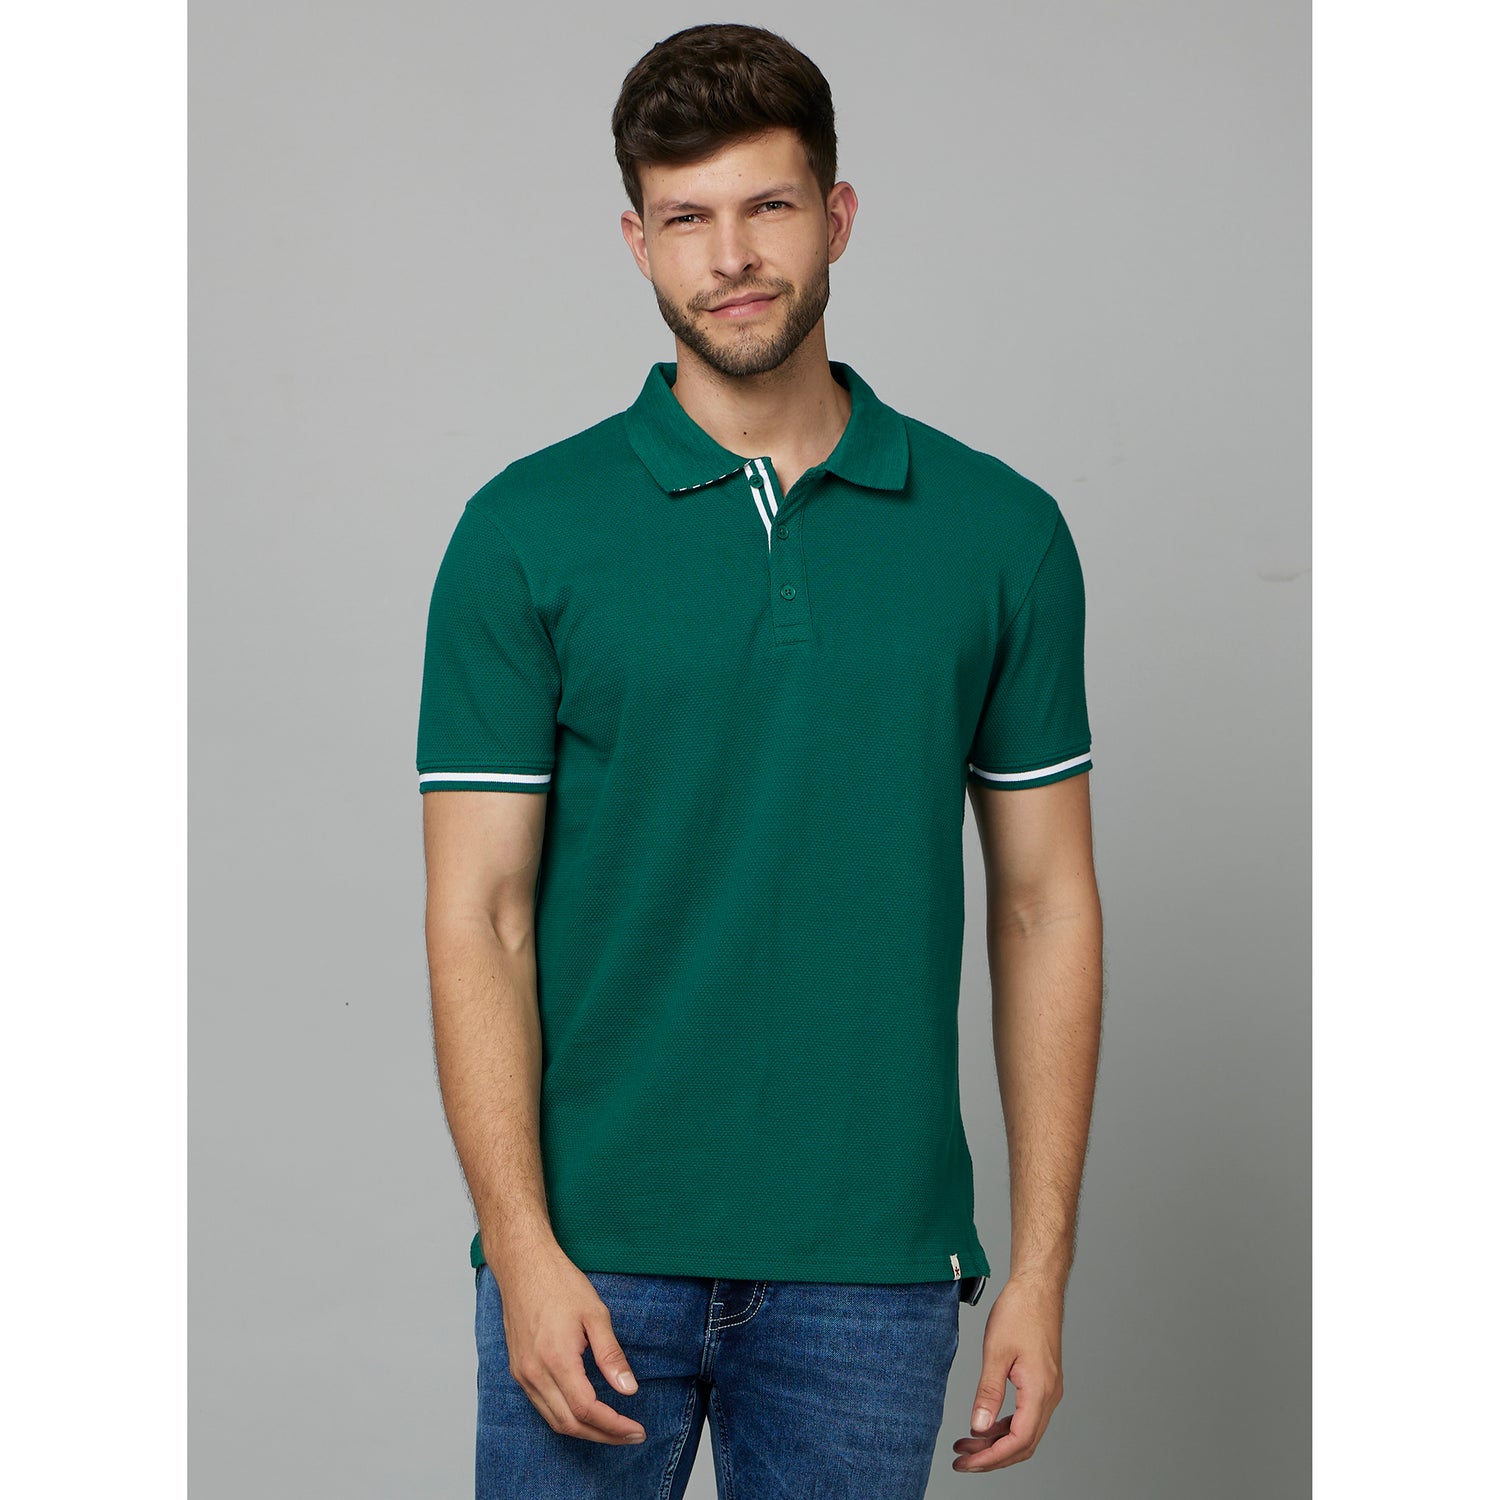 Polo Collar Cotton Casual T-Shirt (SECORNTIP)